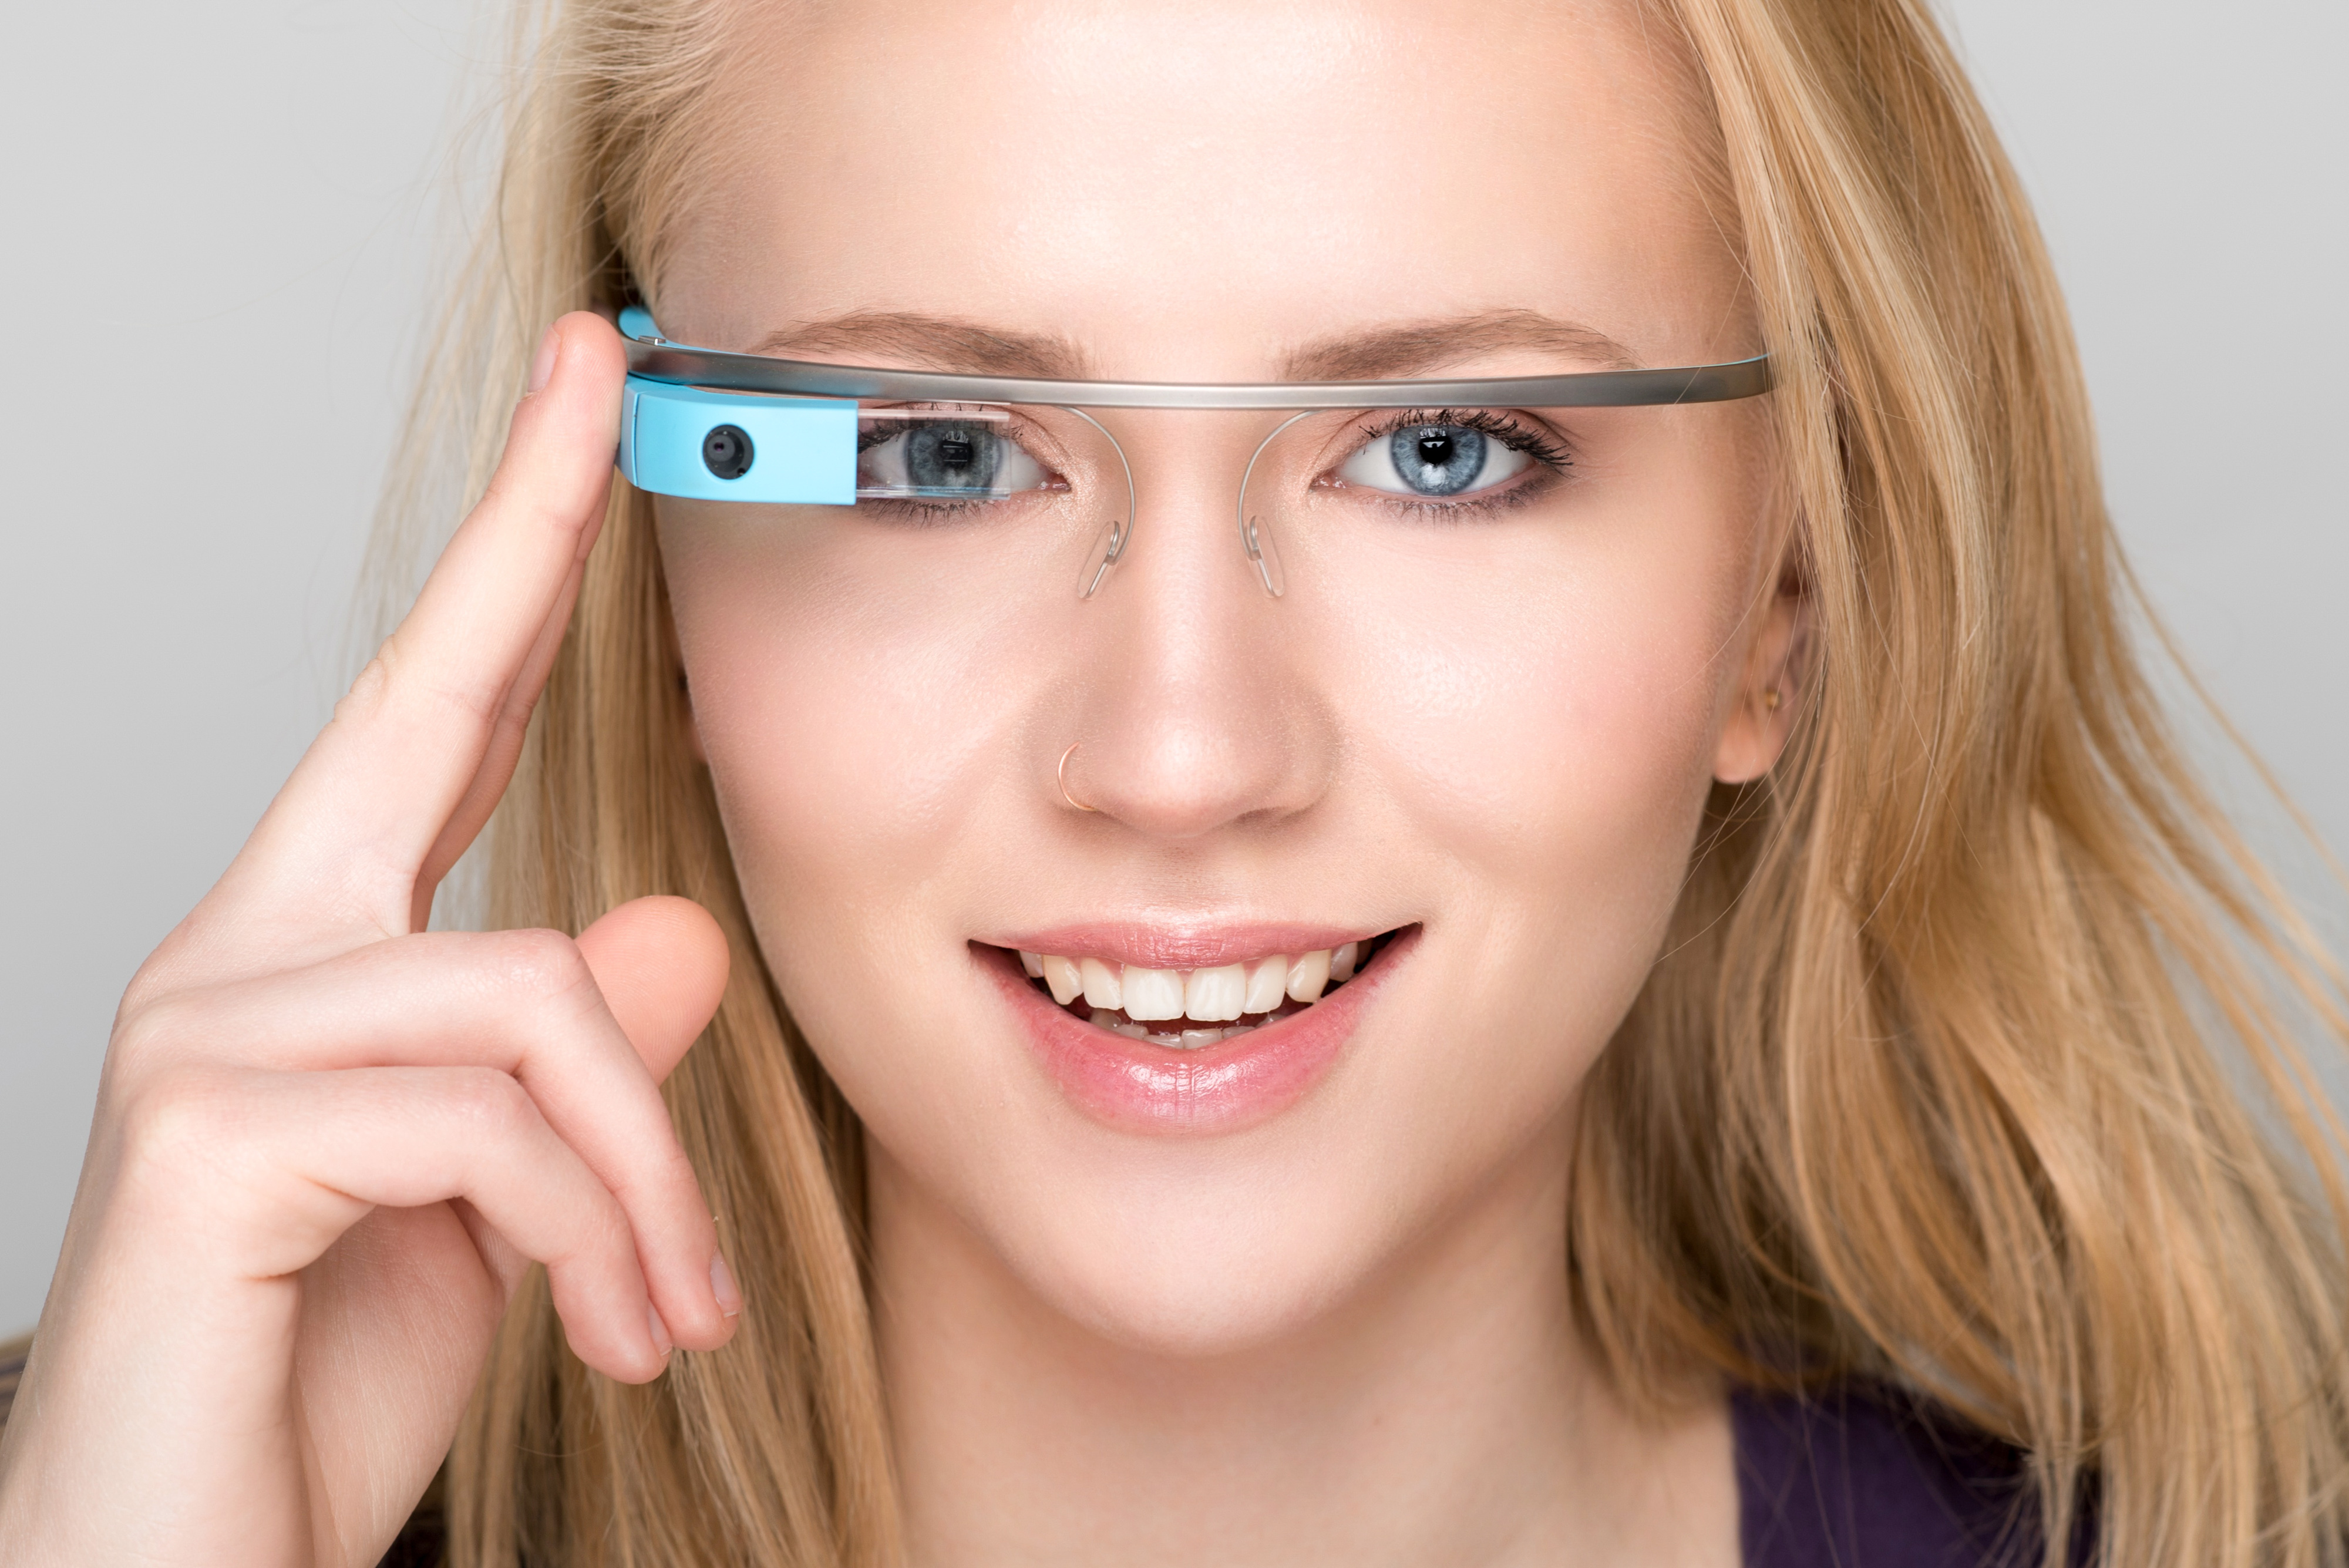 Lancées en fanfare en 2013, les Google Glass n’ont finalement pas convaincu. Google a stoppé leur production en 2015 sans pour autant abandonner le projet. En 2019, sont apparues&nbsp;des&nbsp;Google Glass 2, une version destinée aux professionnels.&nbsp;© Giuseppe Costantino, Shutterstock